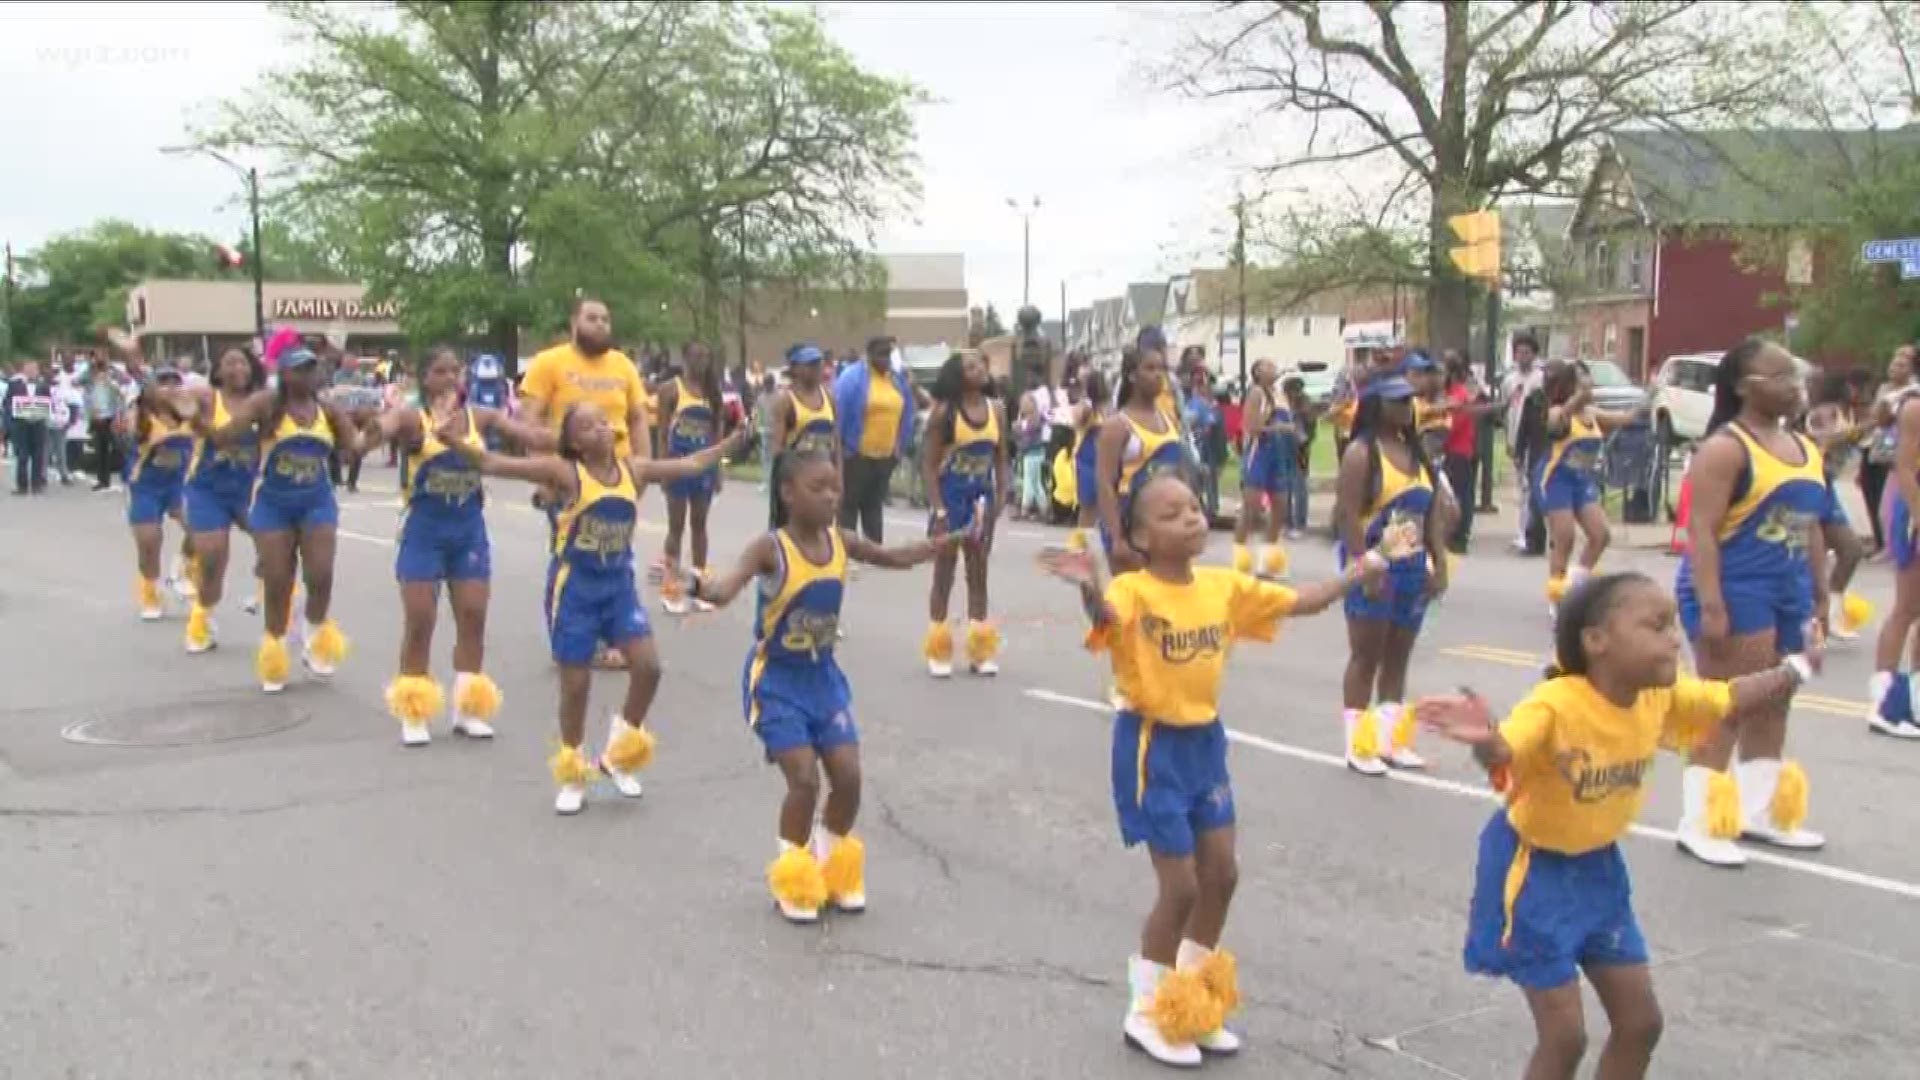 Buffalo celebrates with parade, festival at MLK Park